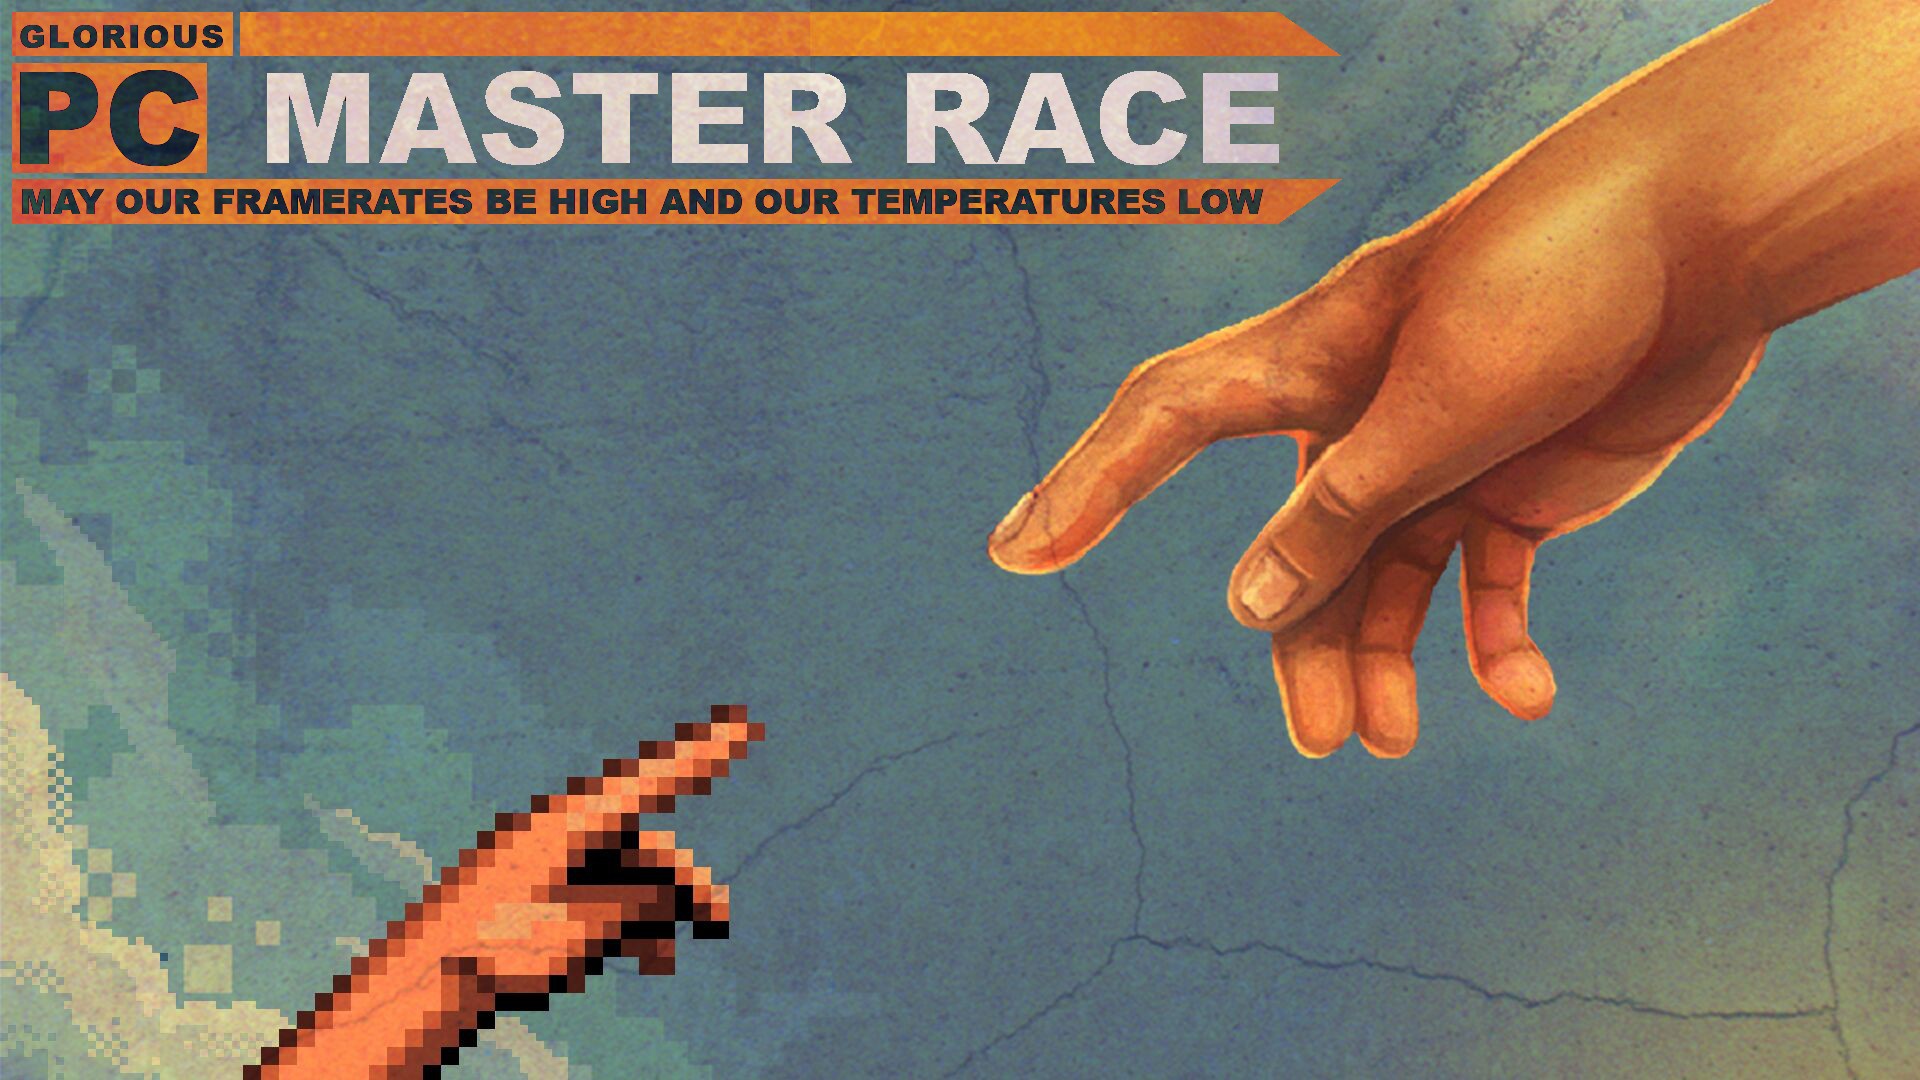 Michelangelo Digital Art Artwork Pixels PC Gaming Master Race Humor Hands 1920x1080